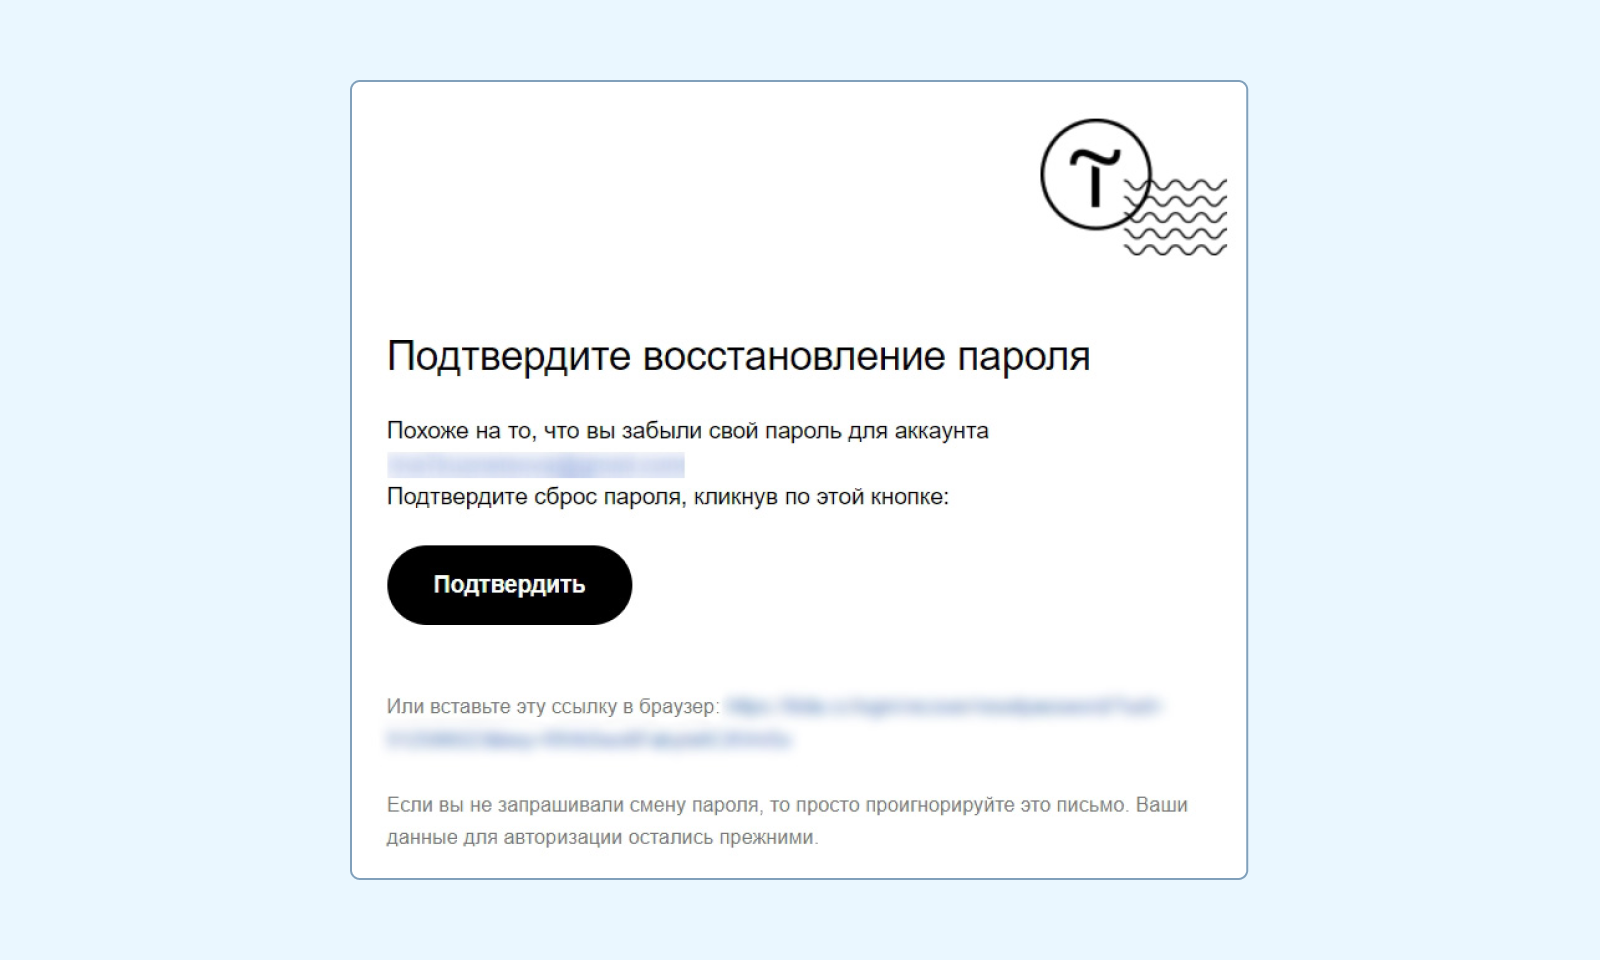 Инструкции от Tilda для восстановления пароля от аккаунта